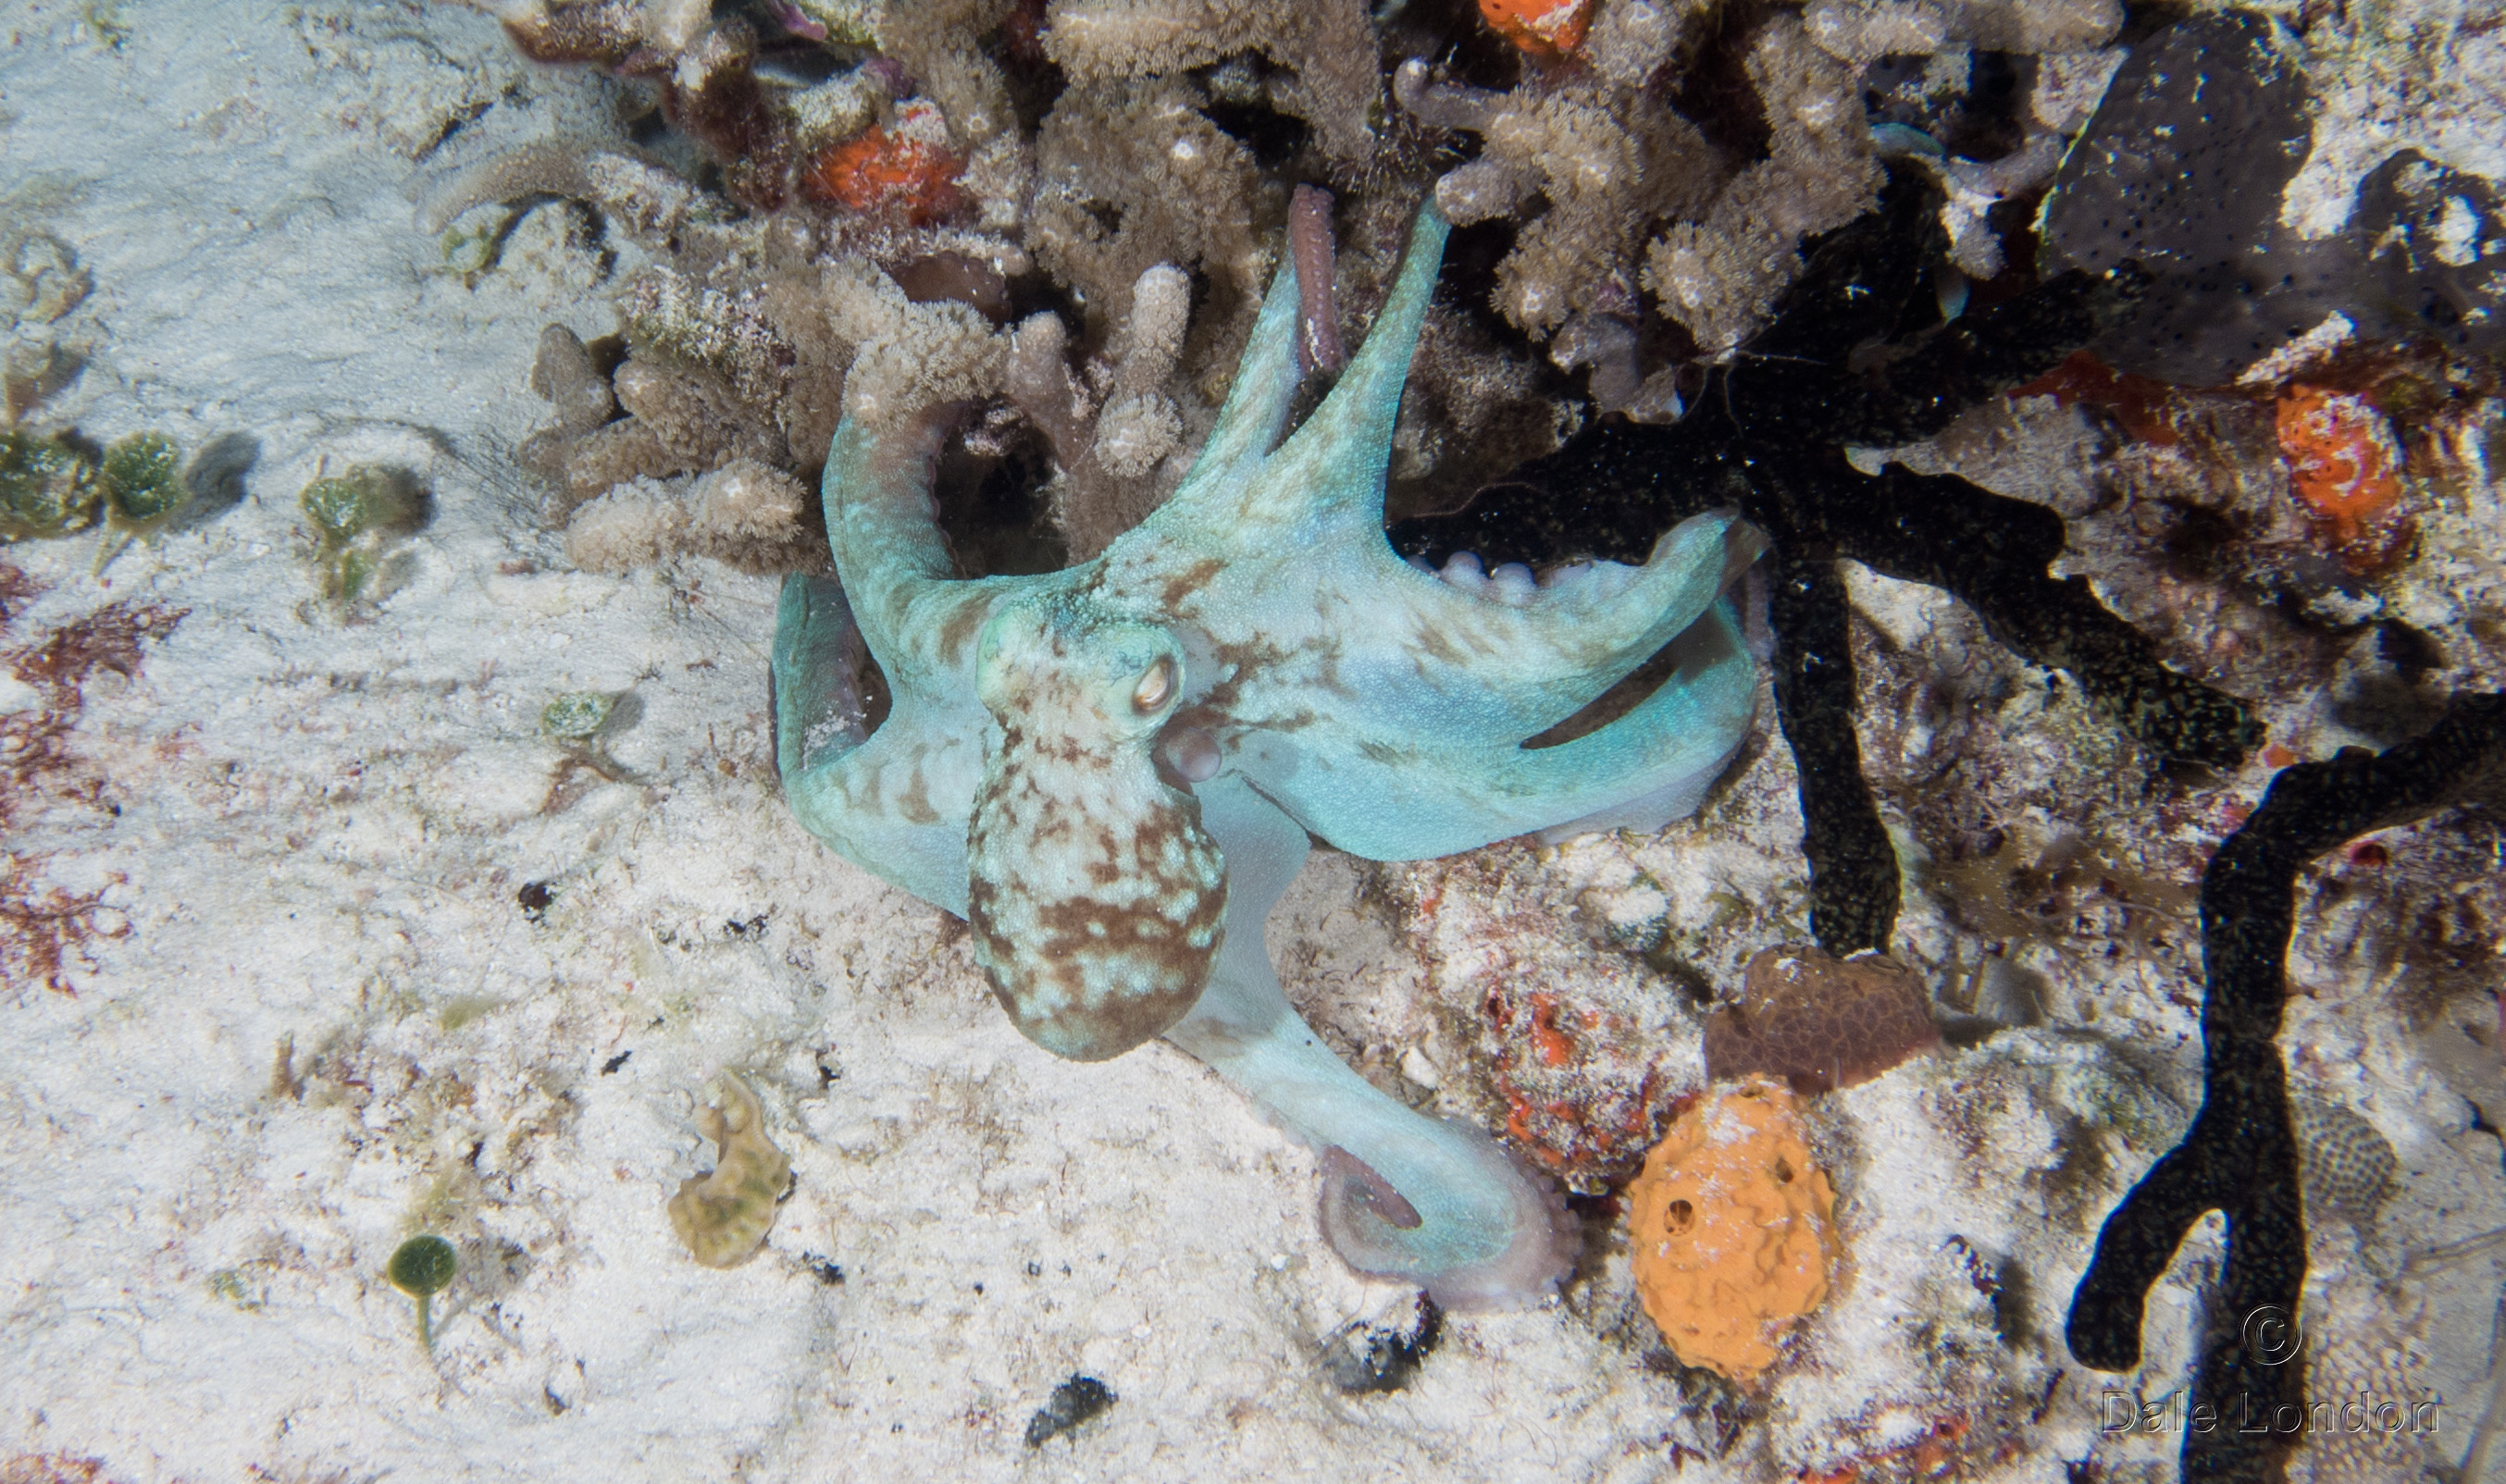 Cozumel Nov 2015 Octopus